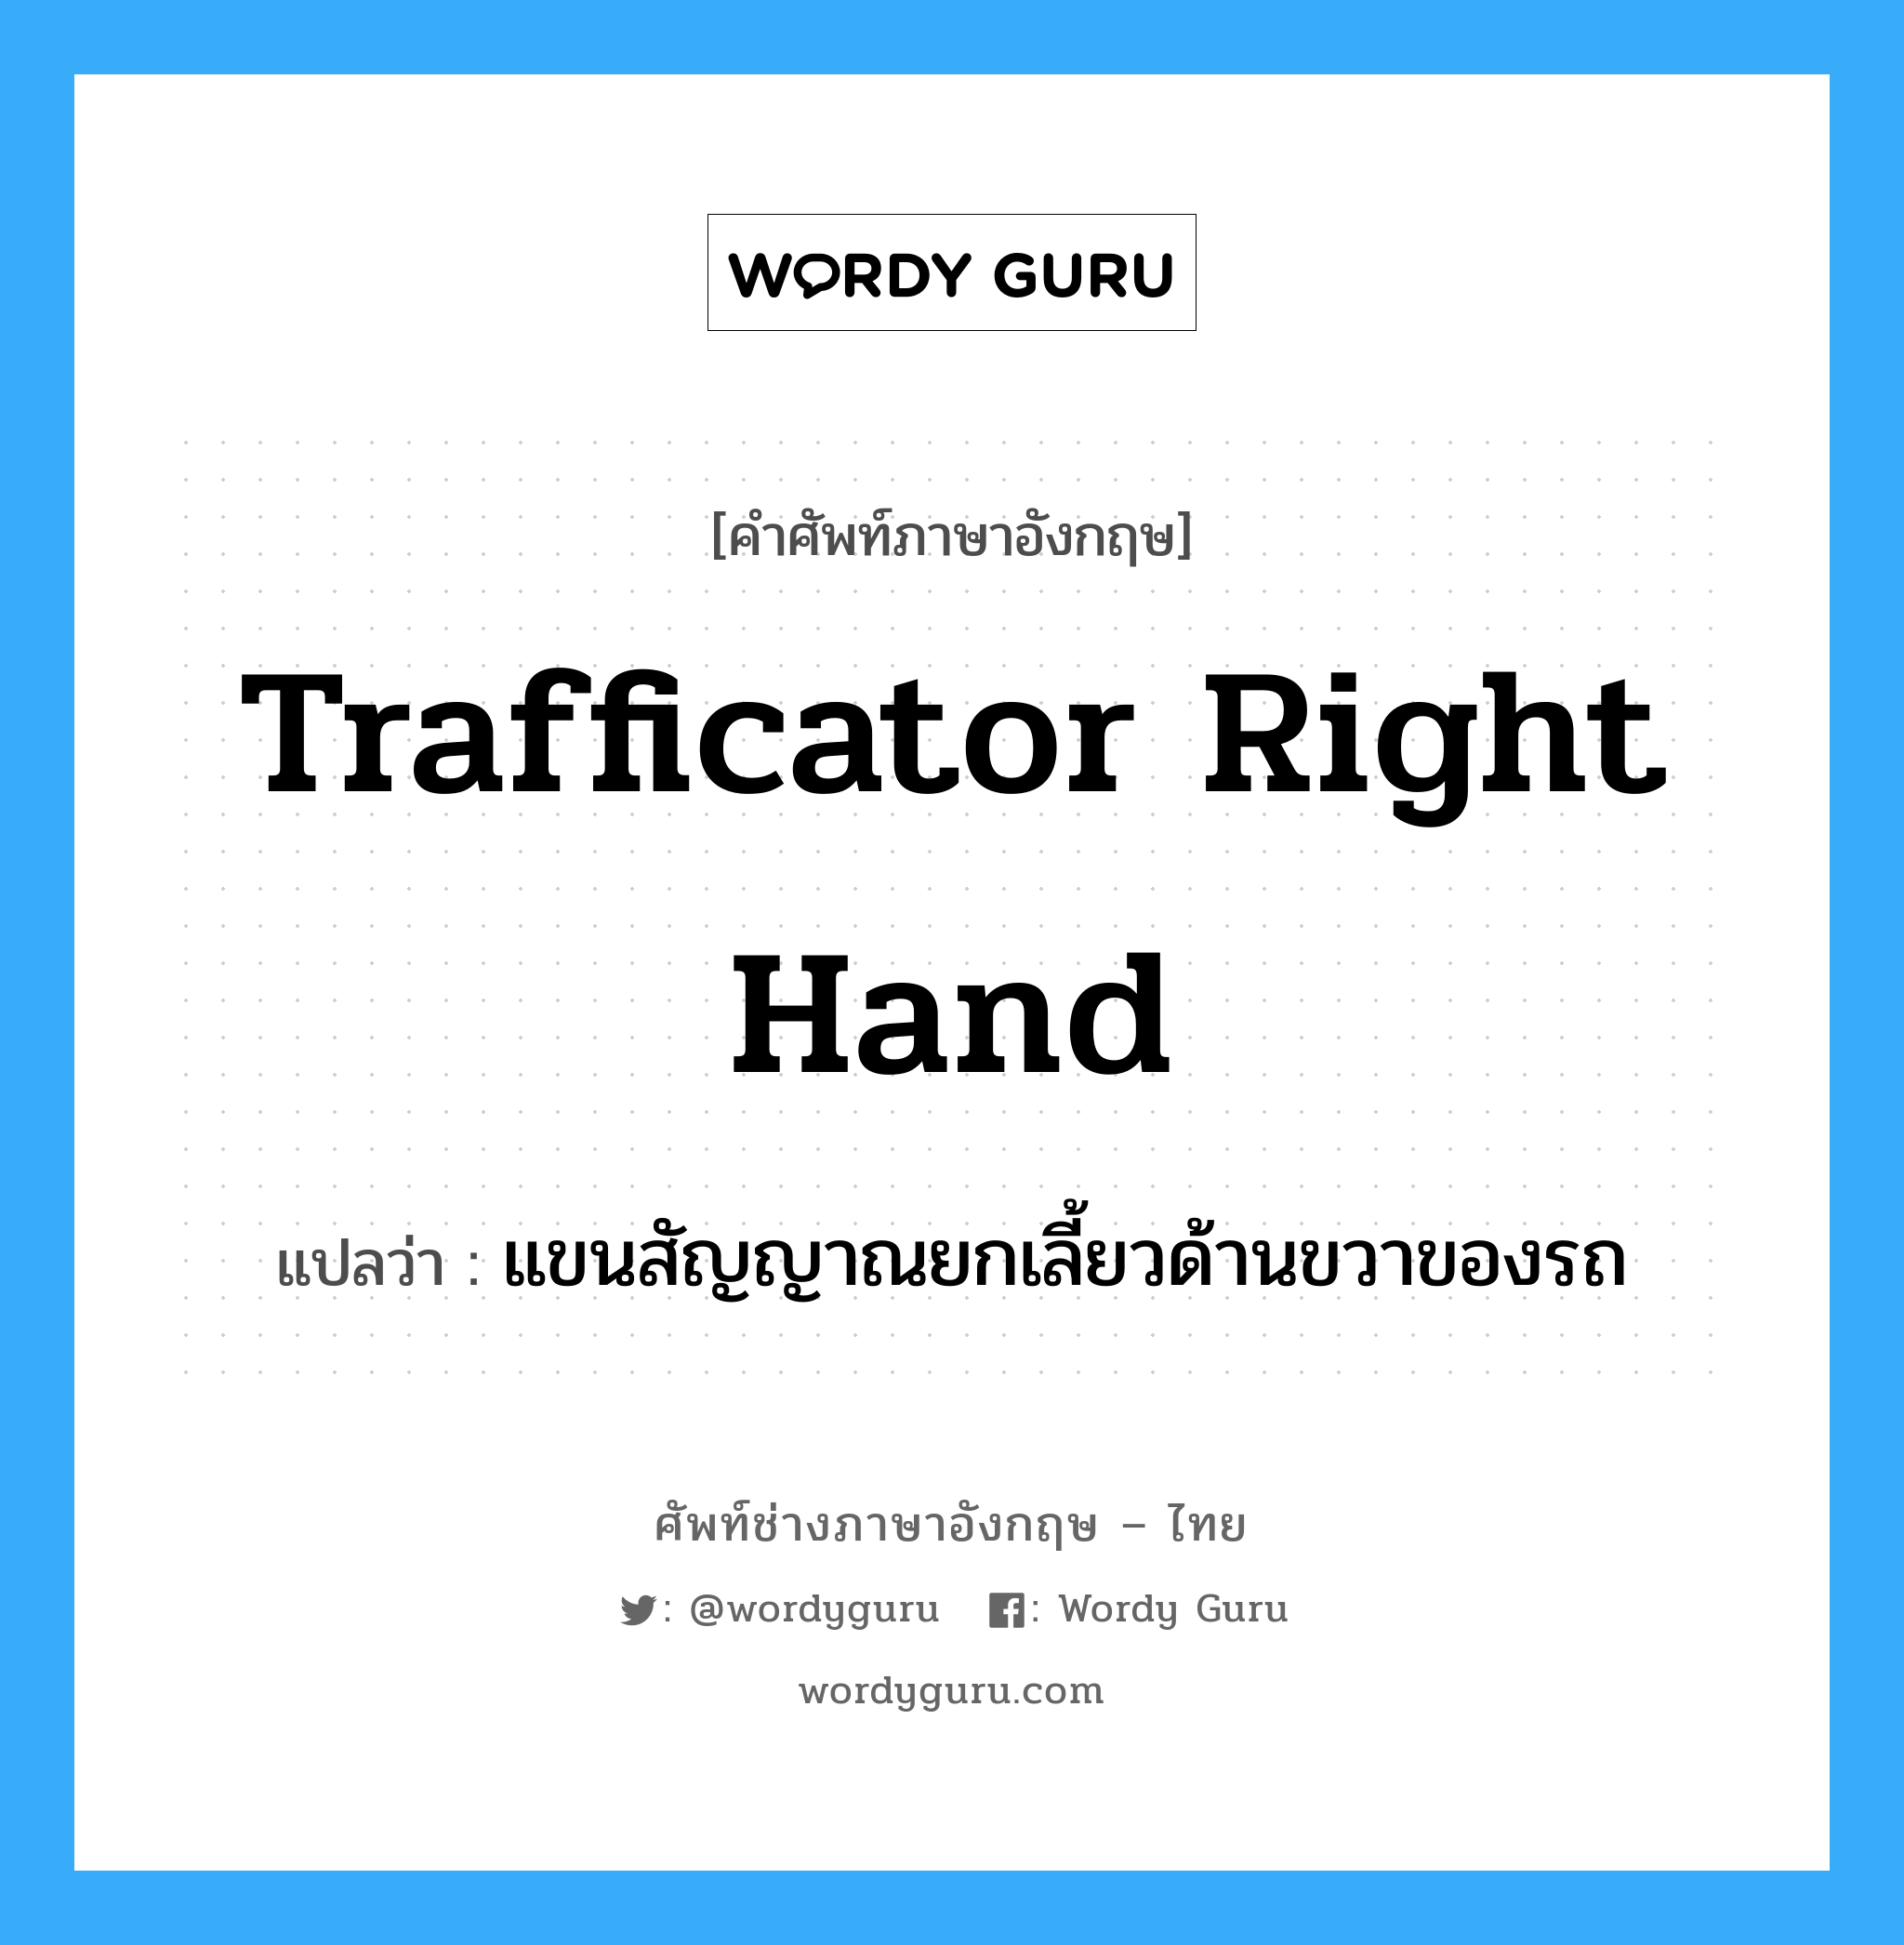 แขนสัญญาณยกเลี้ยวด้านขวาของรถ ภาษาอังกฤษ?, คำศัพท์ช่างภาษาอังกฤษ - ไทย แขนสัญญาณยกเลี้ยวด้านขวาของรถ คำศัพท์ภาษาอังกฤษ แขนสัญญาณยกเลี้ยวด้านขวาของรถ แปลว่า trafficator right hand